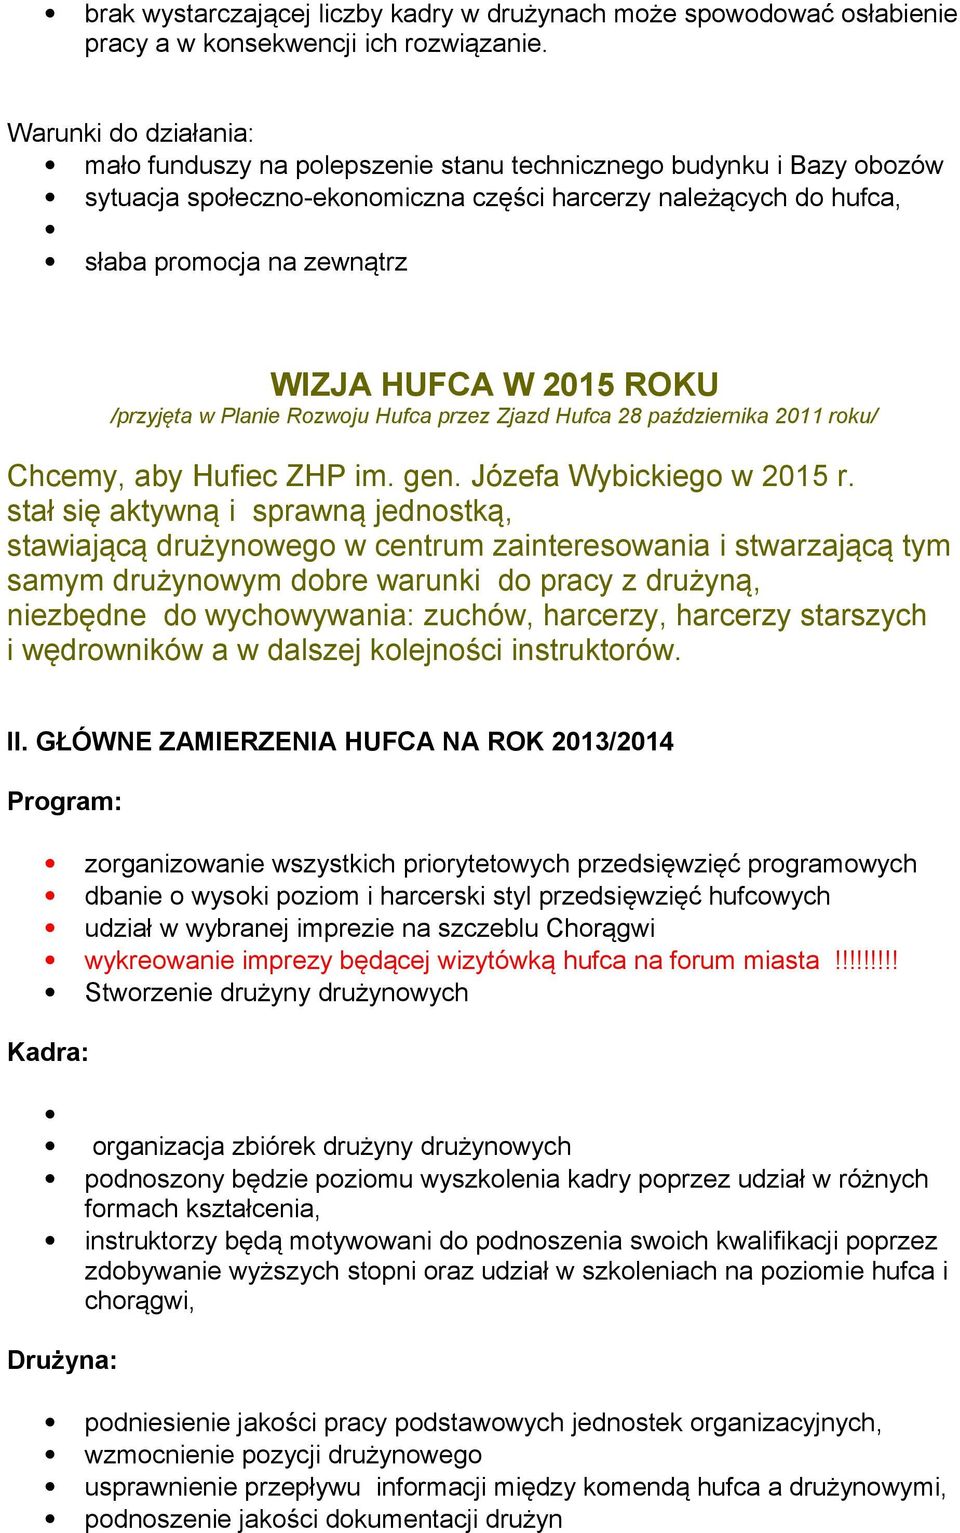 W 2015 ROKU /przyjęta w Planie Rozwoju Hufca przez Zjazd Hufca 28 października 2011 roku/ Chcemy, aby Hufiec ZHP im. gen. Józefa Wybickiego w 2015 r.